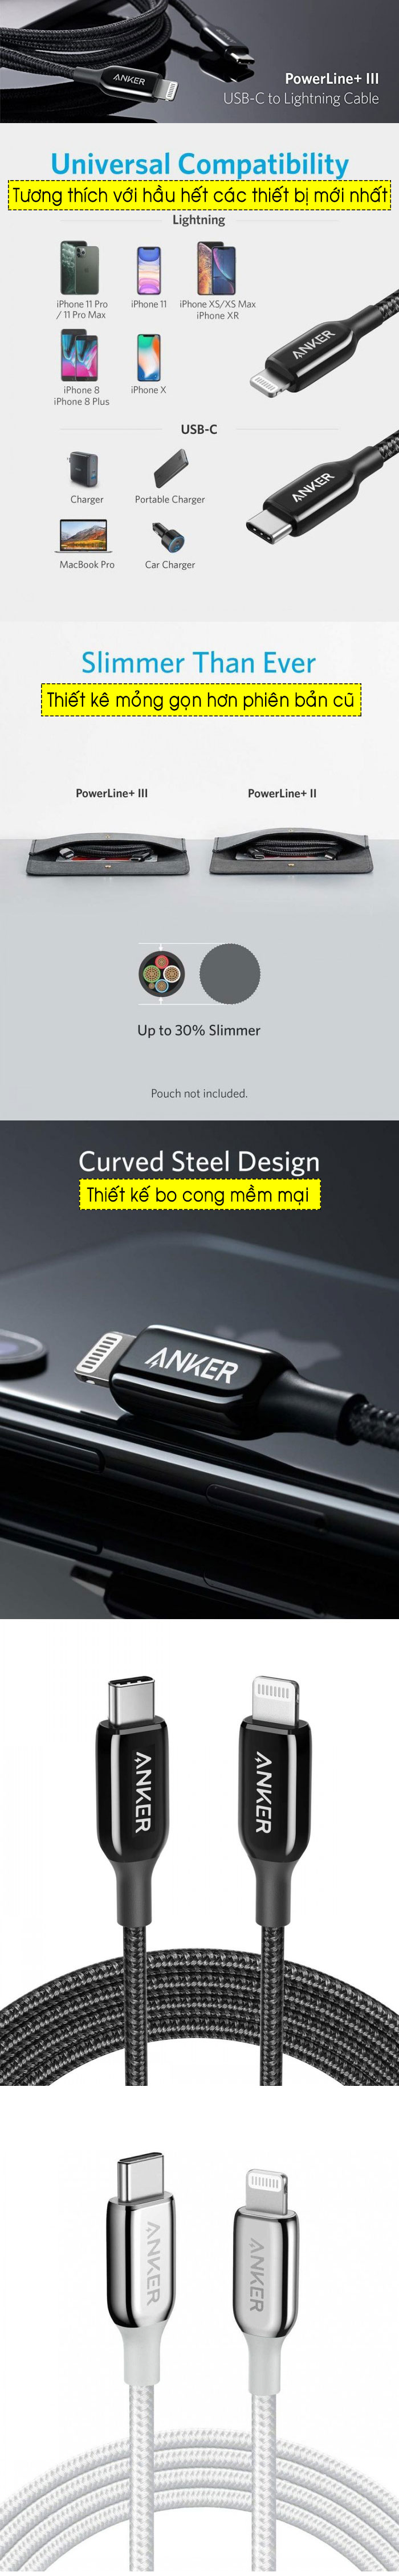 Cáp sạc iPhone Anker Powerline+ III USB C to Lightning - dài 1.8m - A8843 6